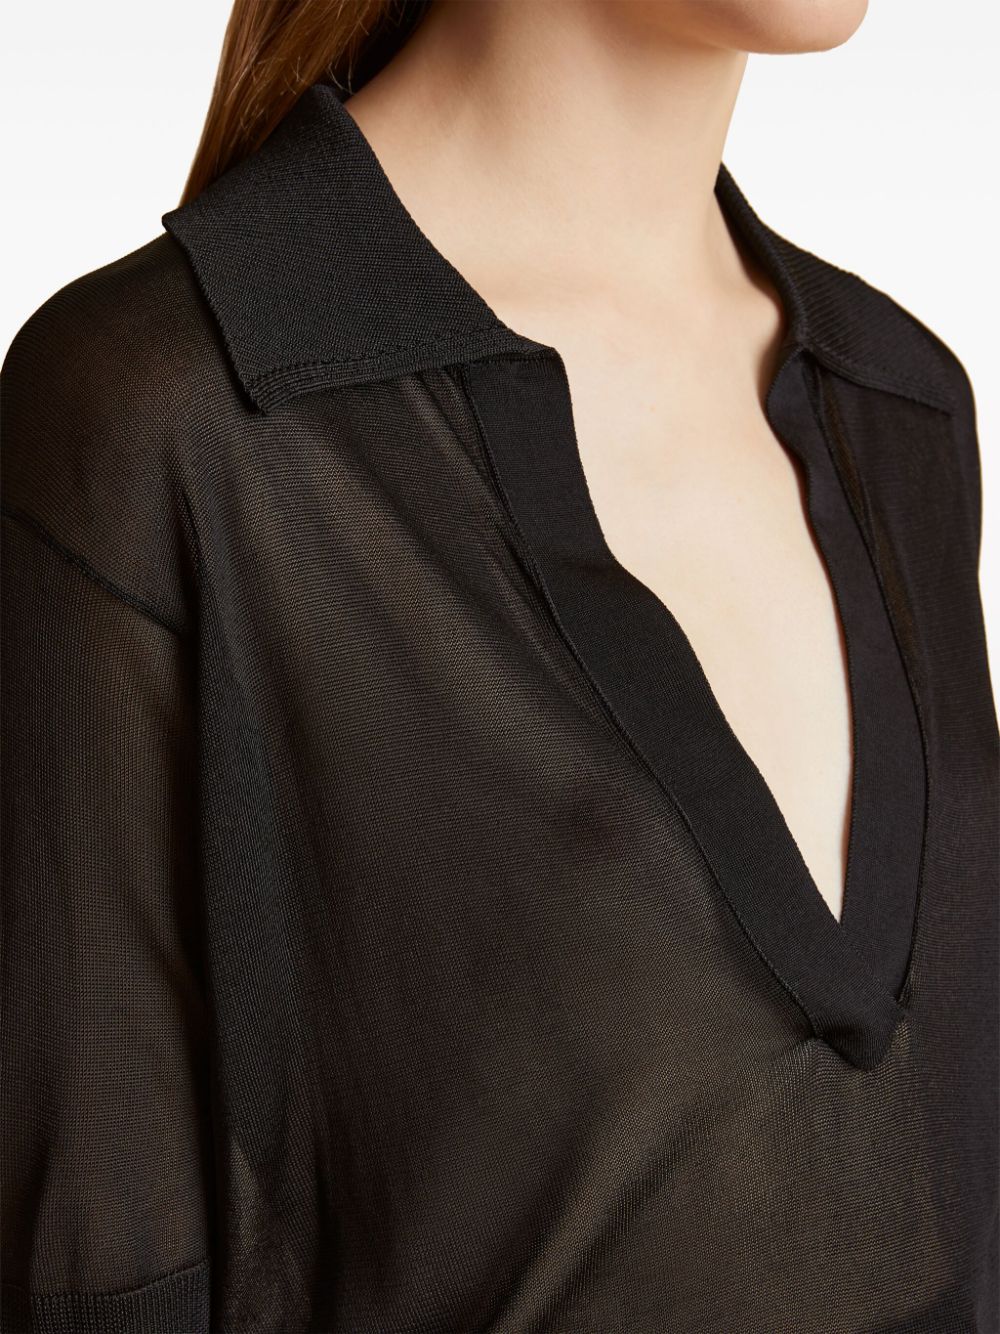 KHAITE Black V-Neck Short Sleeve Top for Women - SS24 Collection